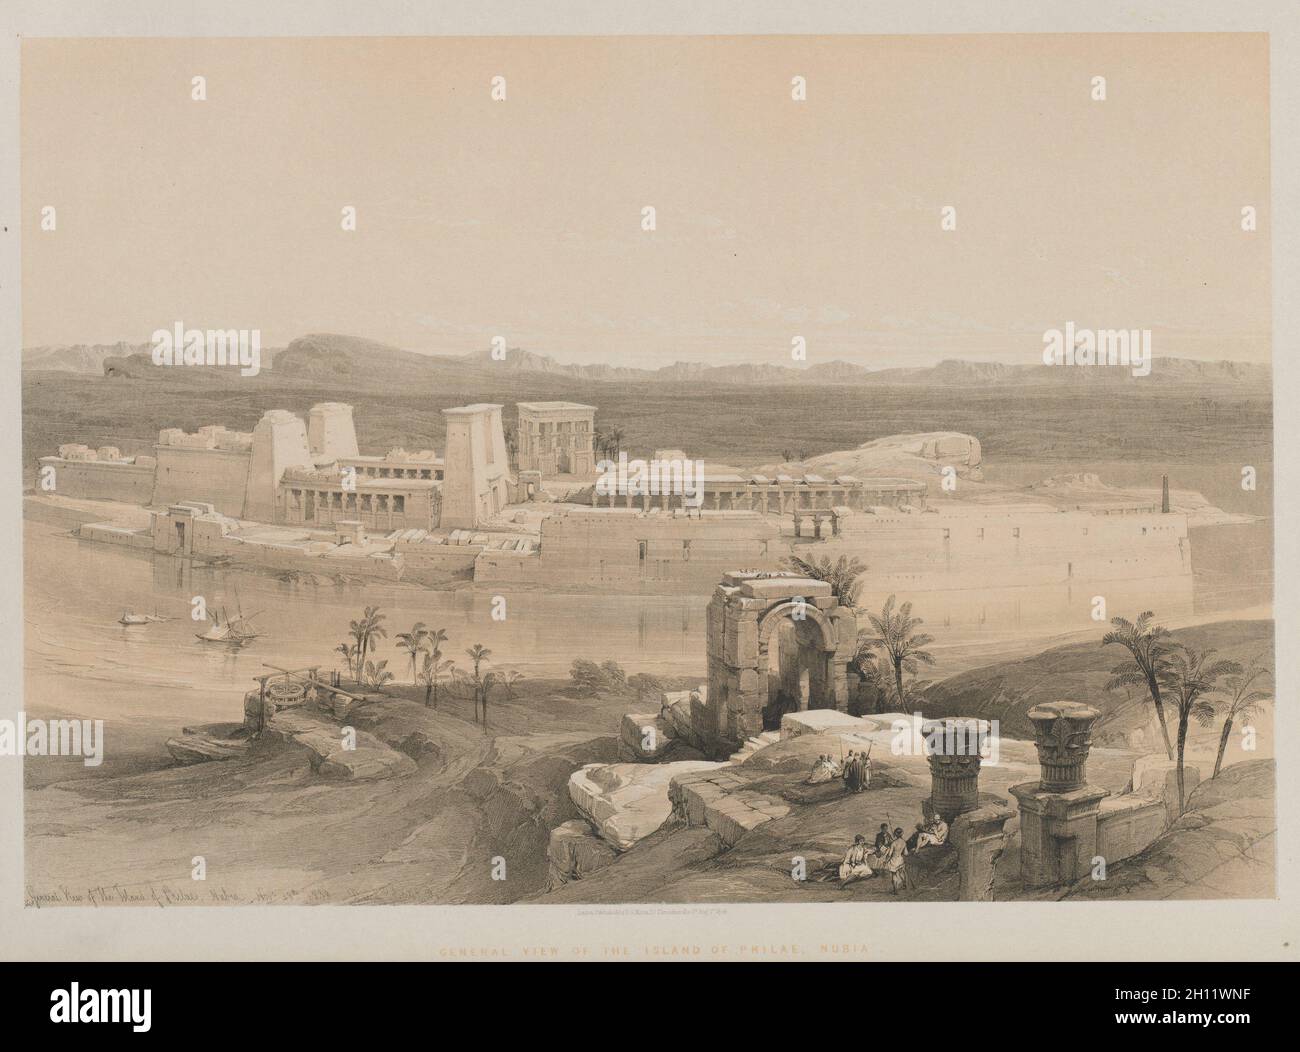 Egitto e Nubia, Volume i: Vista generale dell'isola di Filae, Nubia, 1846. Louis Haghe (britannico, 1806-1885), F. G. Moon (britannico, 1797-1871), dopo David Roberts (scozzese, 1796-1864). Litografia a colori; foglio: 43.2 x 60.4 cm (17 x 23 3/4 pollici); immagine: 36.4 x 52.3 cm (14 5/16 x 20 9/16 pollici). Foto Stock